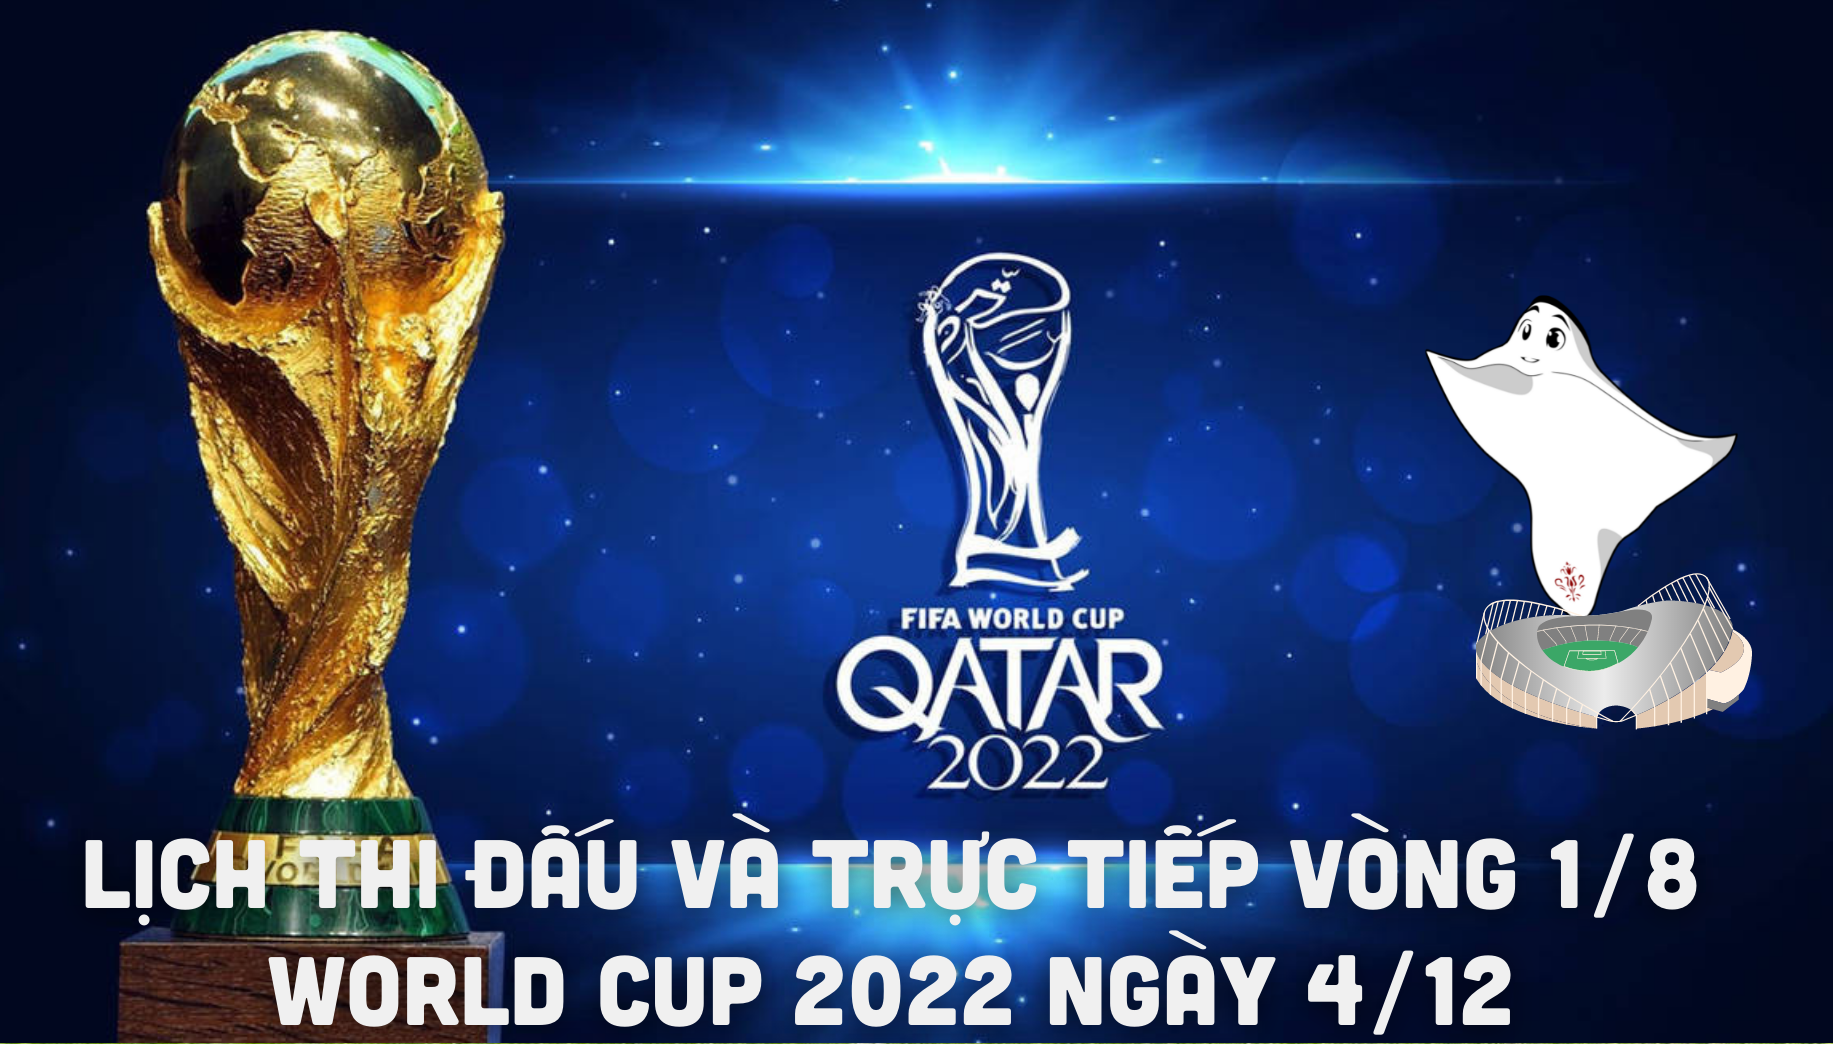 Lịch thi đấu và trực tiếp vòng 1/8 World Cup 2022 ngày 4/12